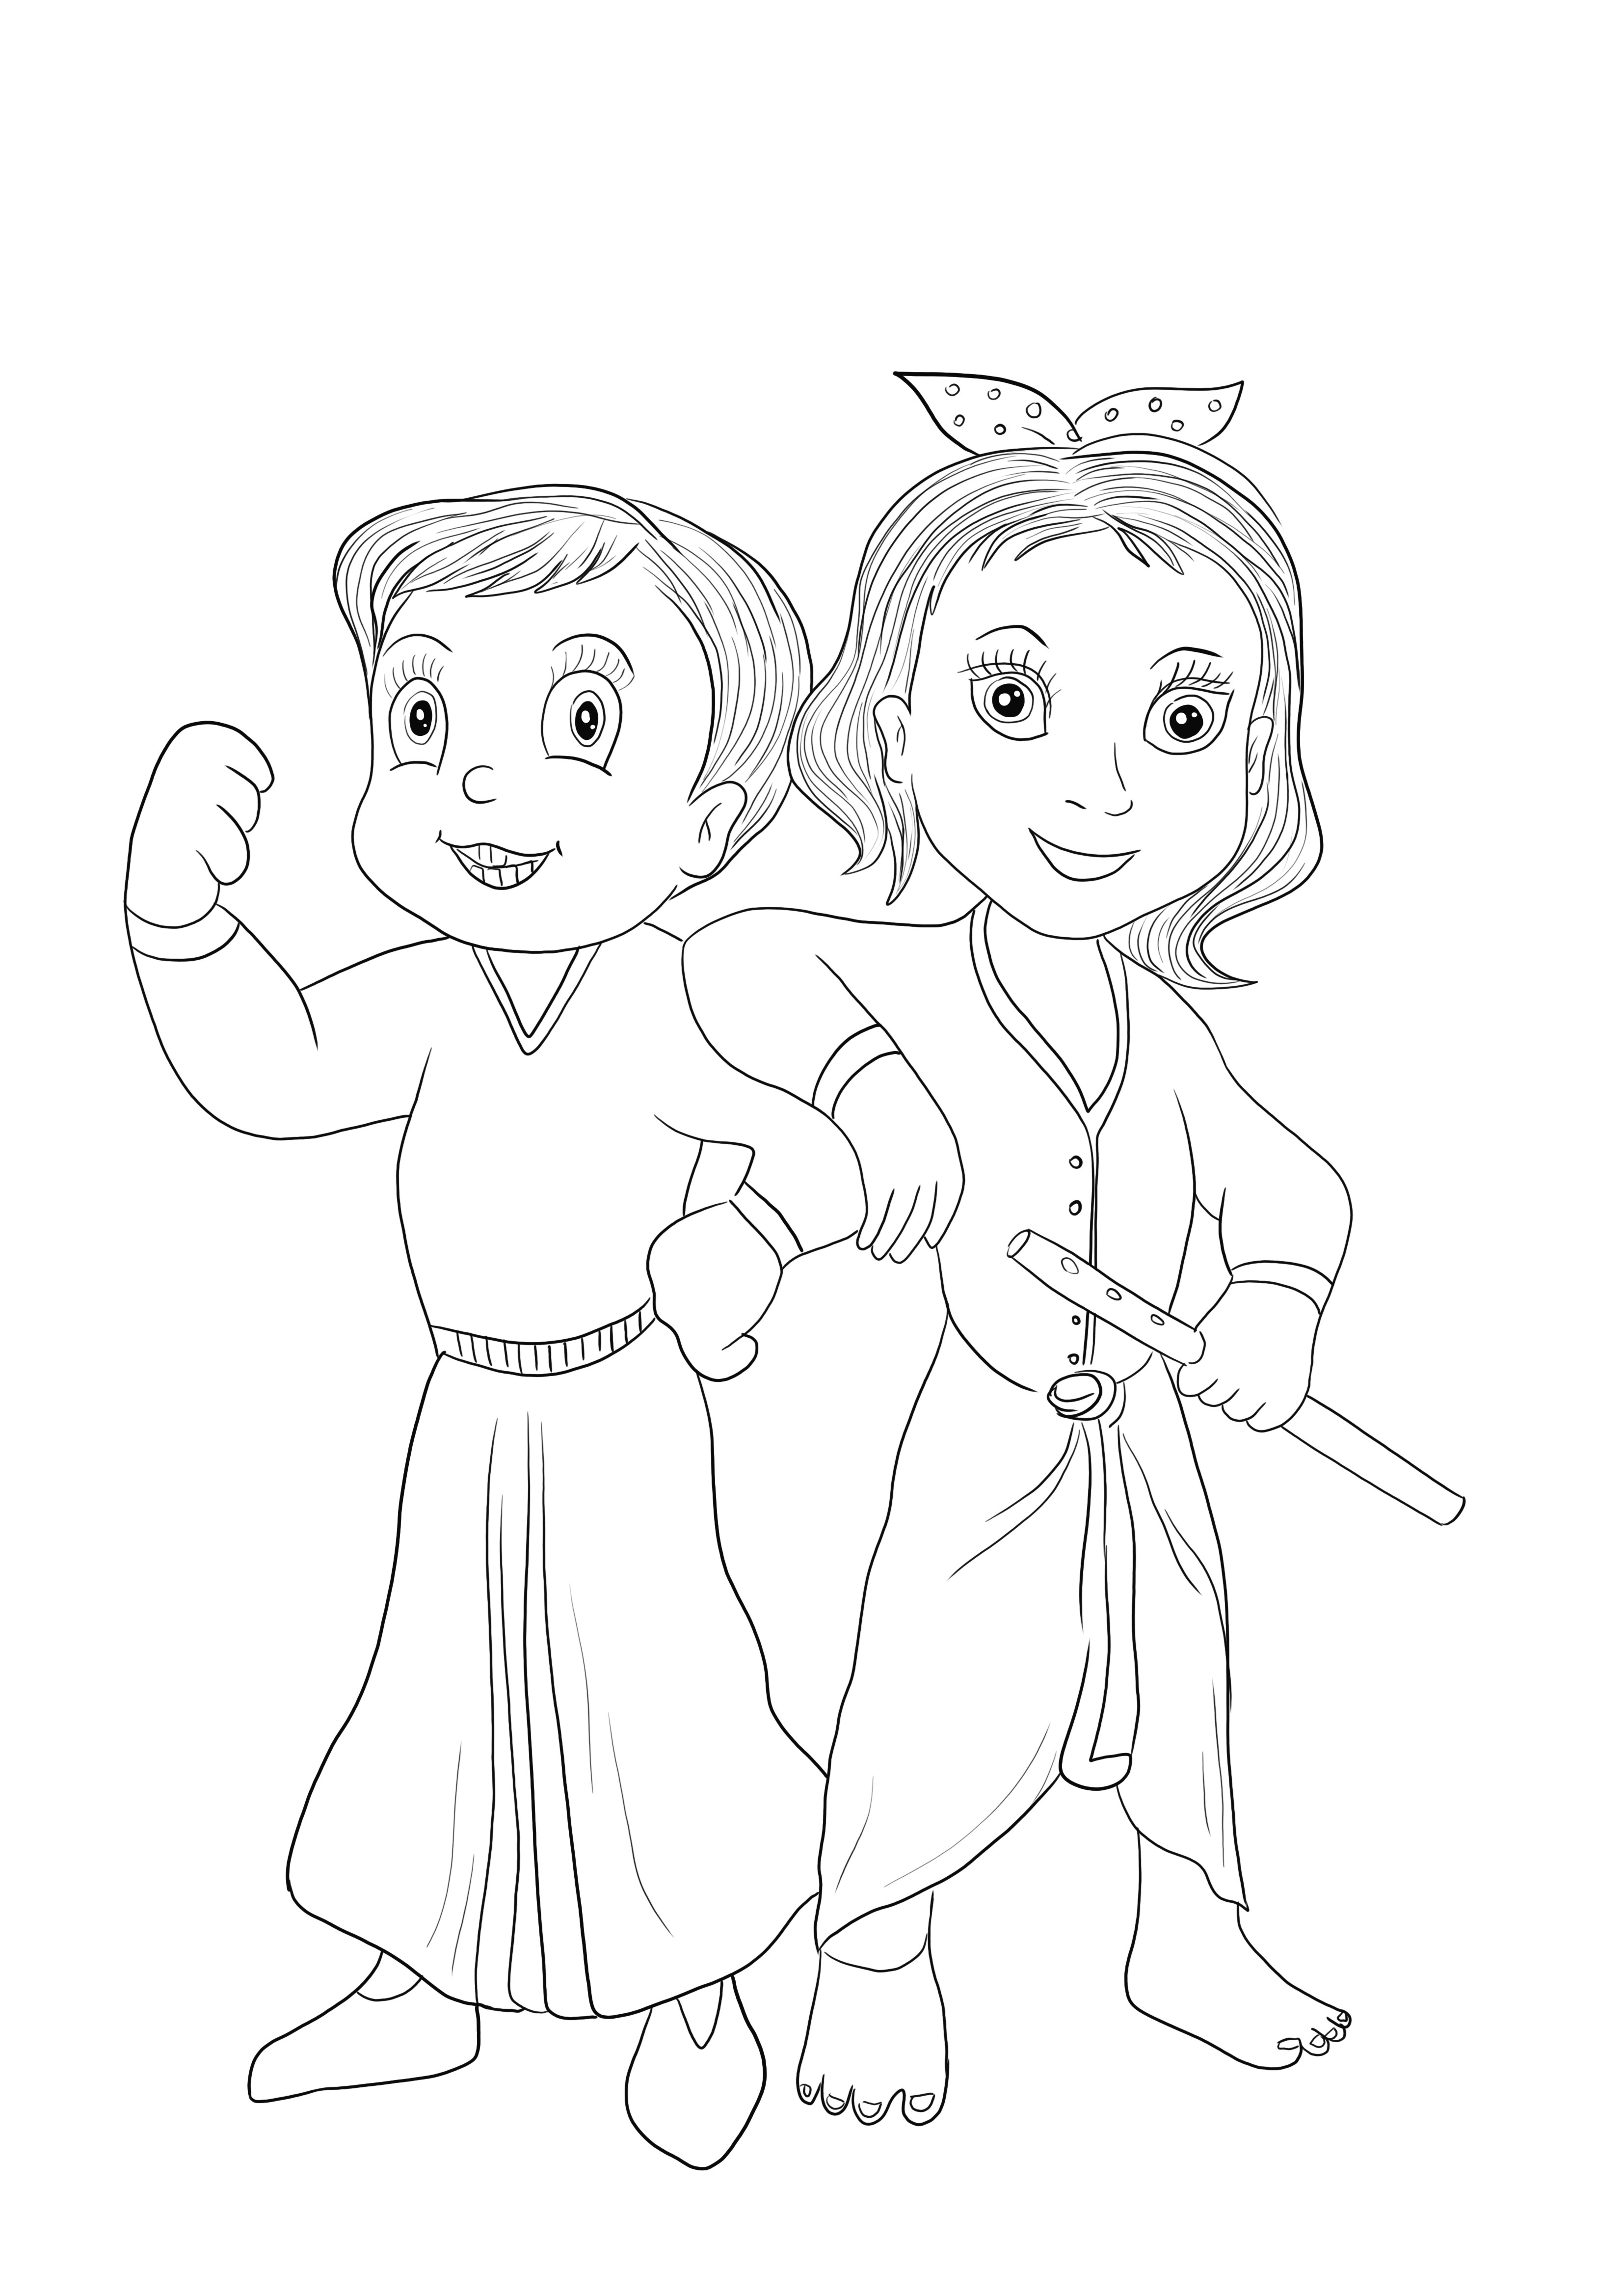 Chhota Bheem i Krishna z gry Chota Bheem do pobrania za darmo i łatwe do pokolorowania